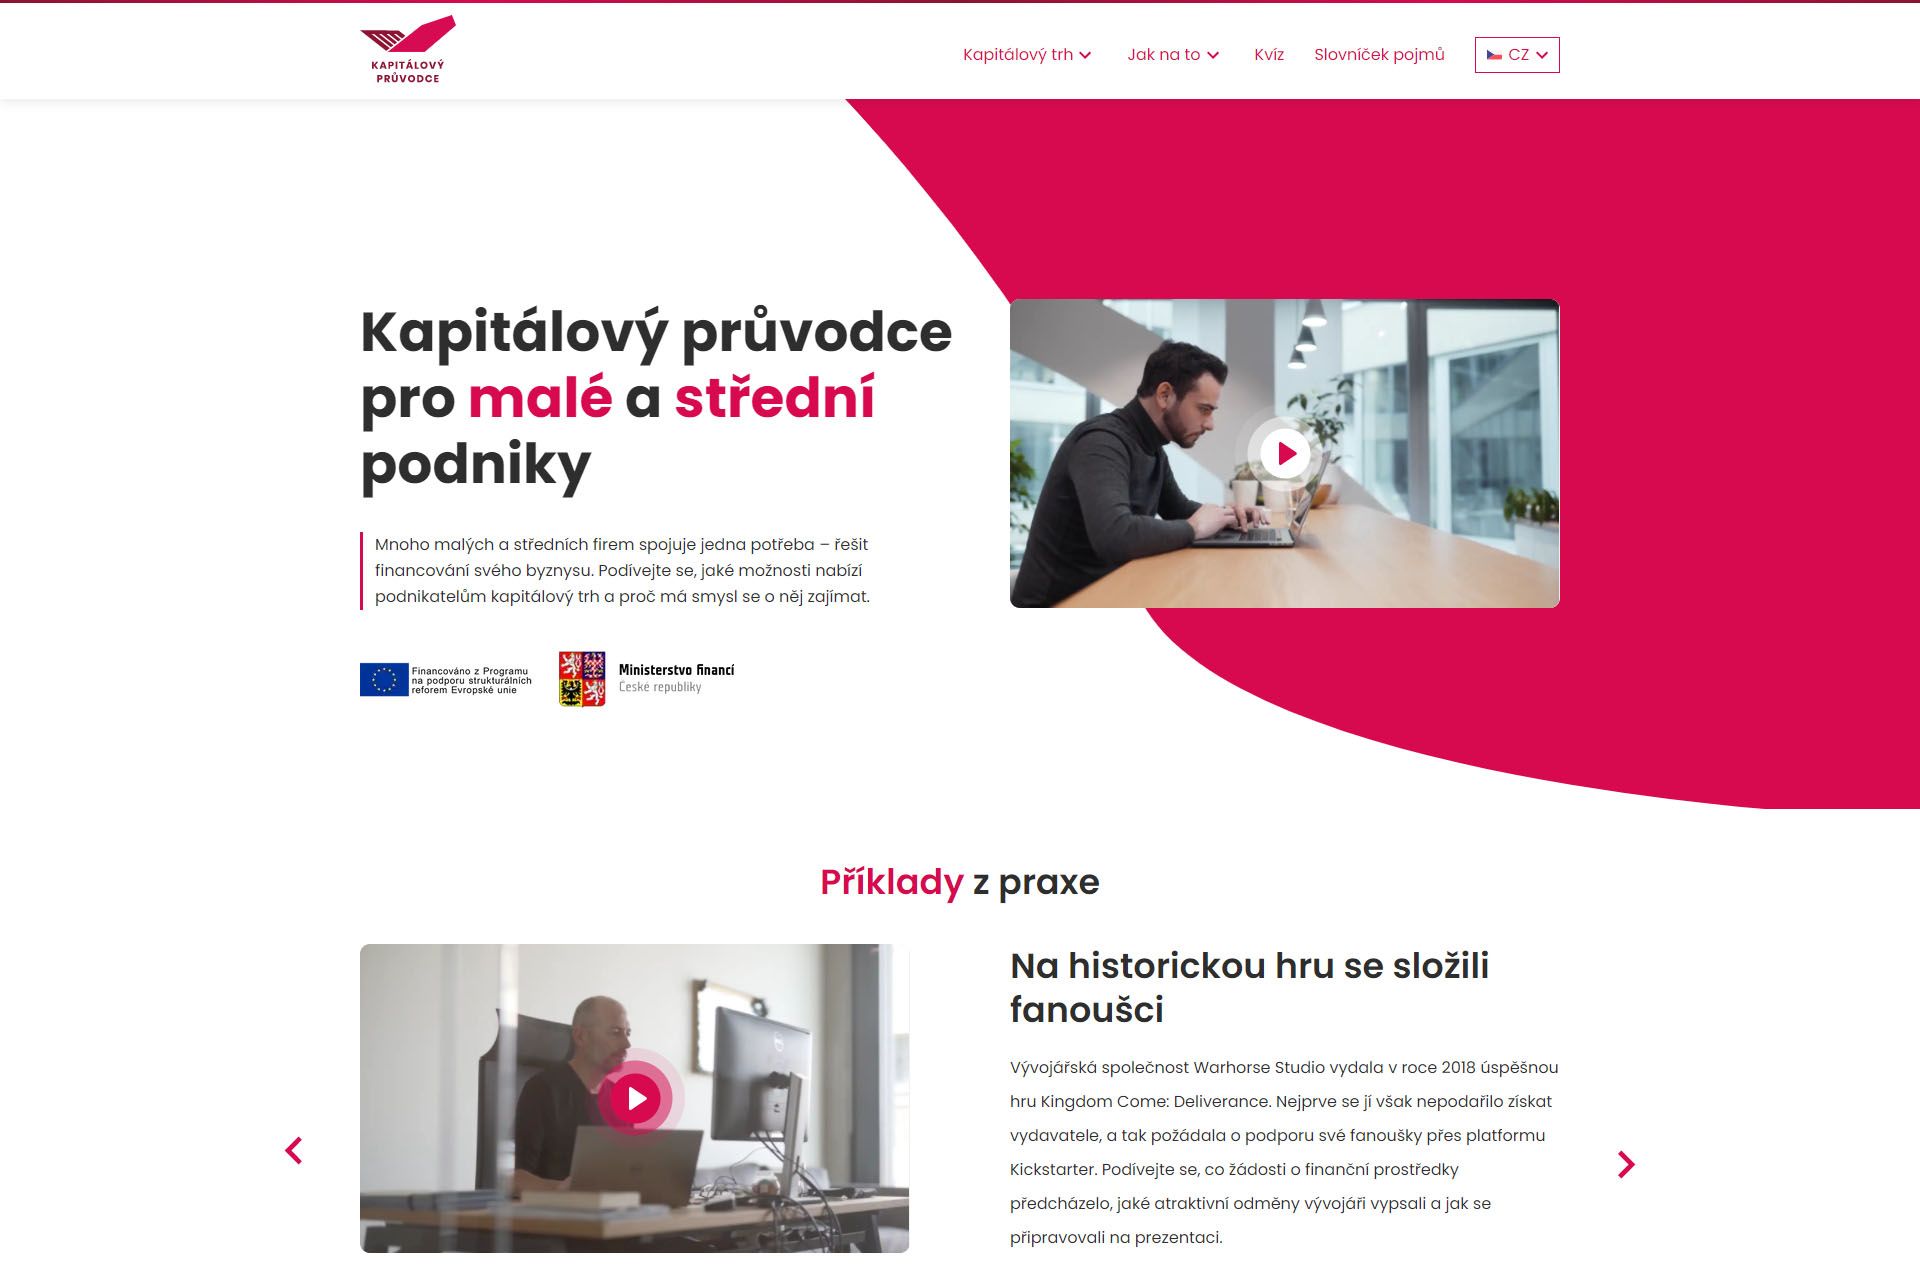 Online konference ke spuštění webu Kapitalovypruvodce.cz